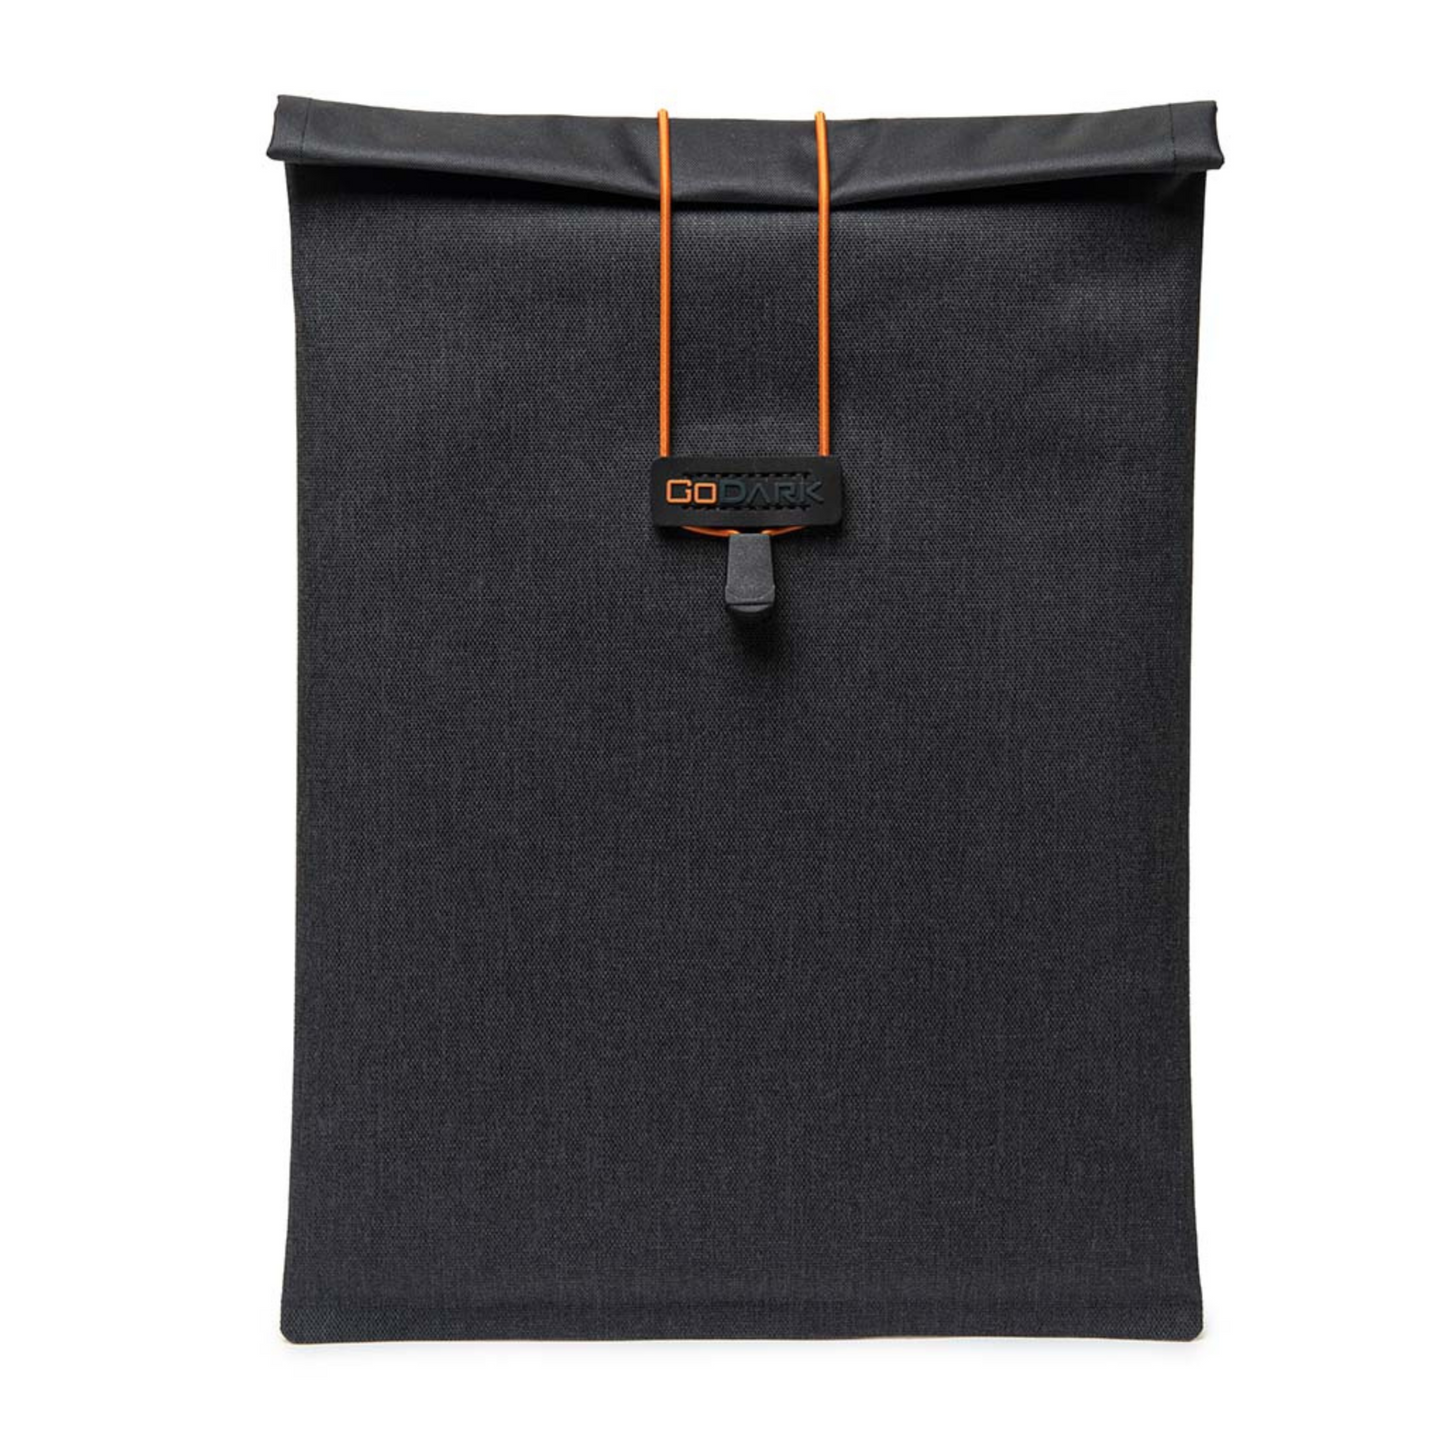 GoDark - Tablet - Faraday Bag